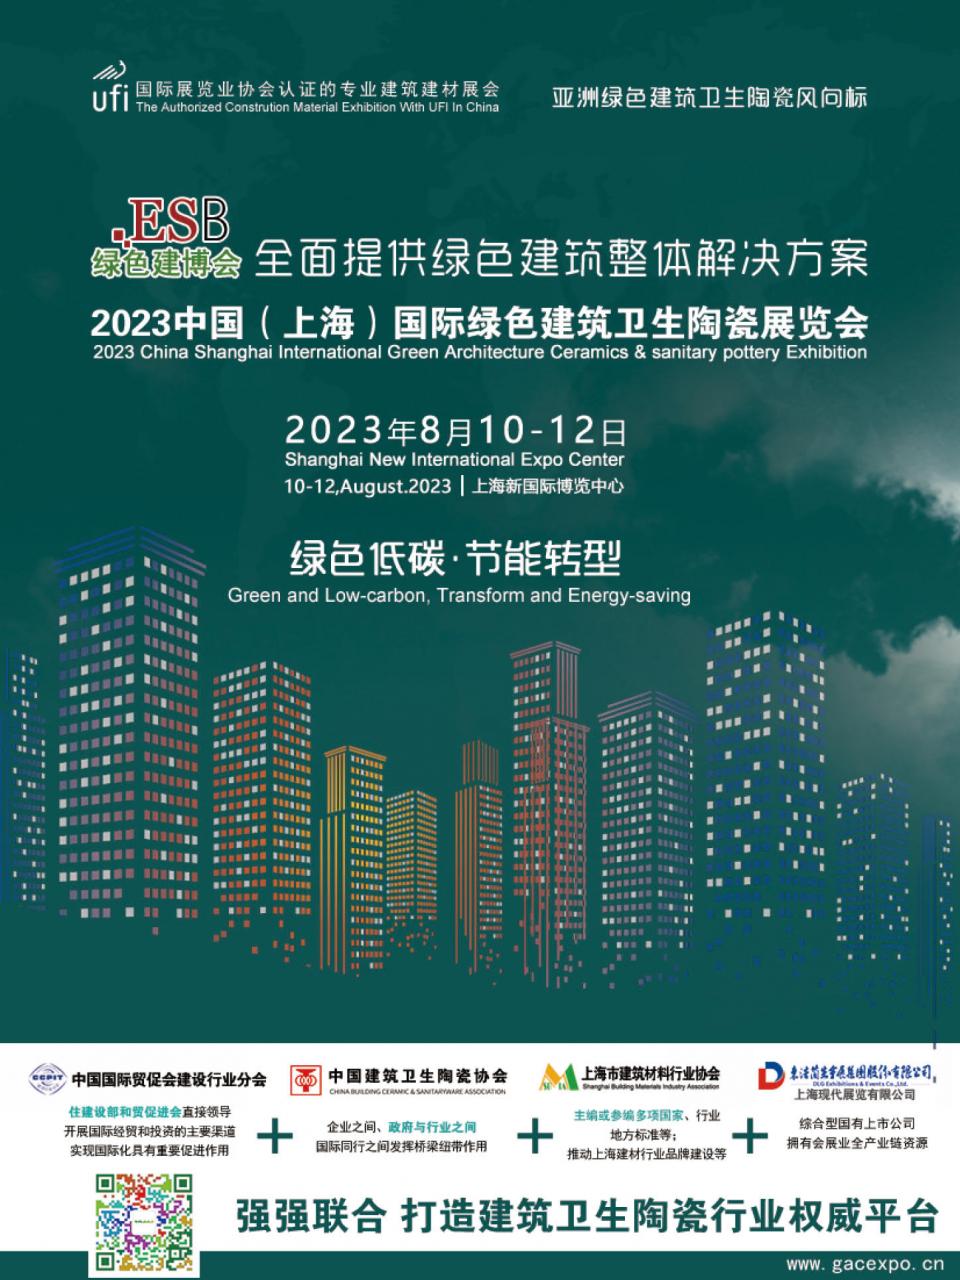 2023中国（上海）国际绿色建筑卫生陶瓷展览会2023年8月10-12日